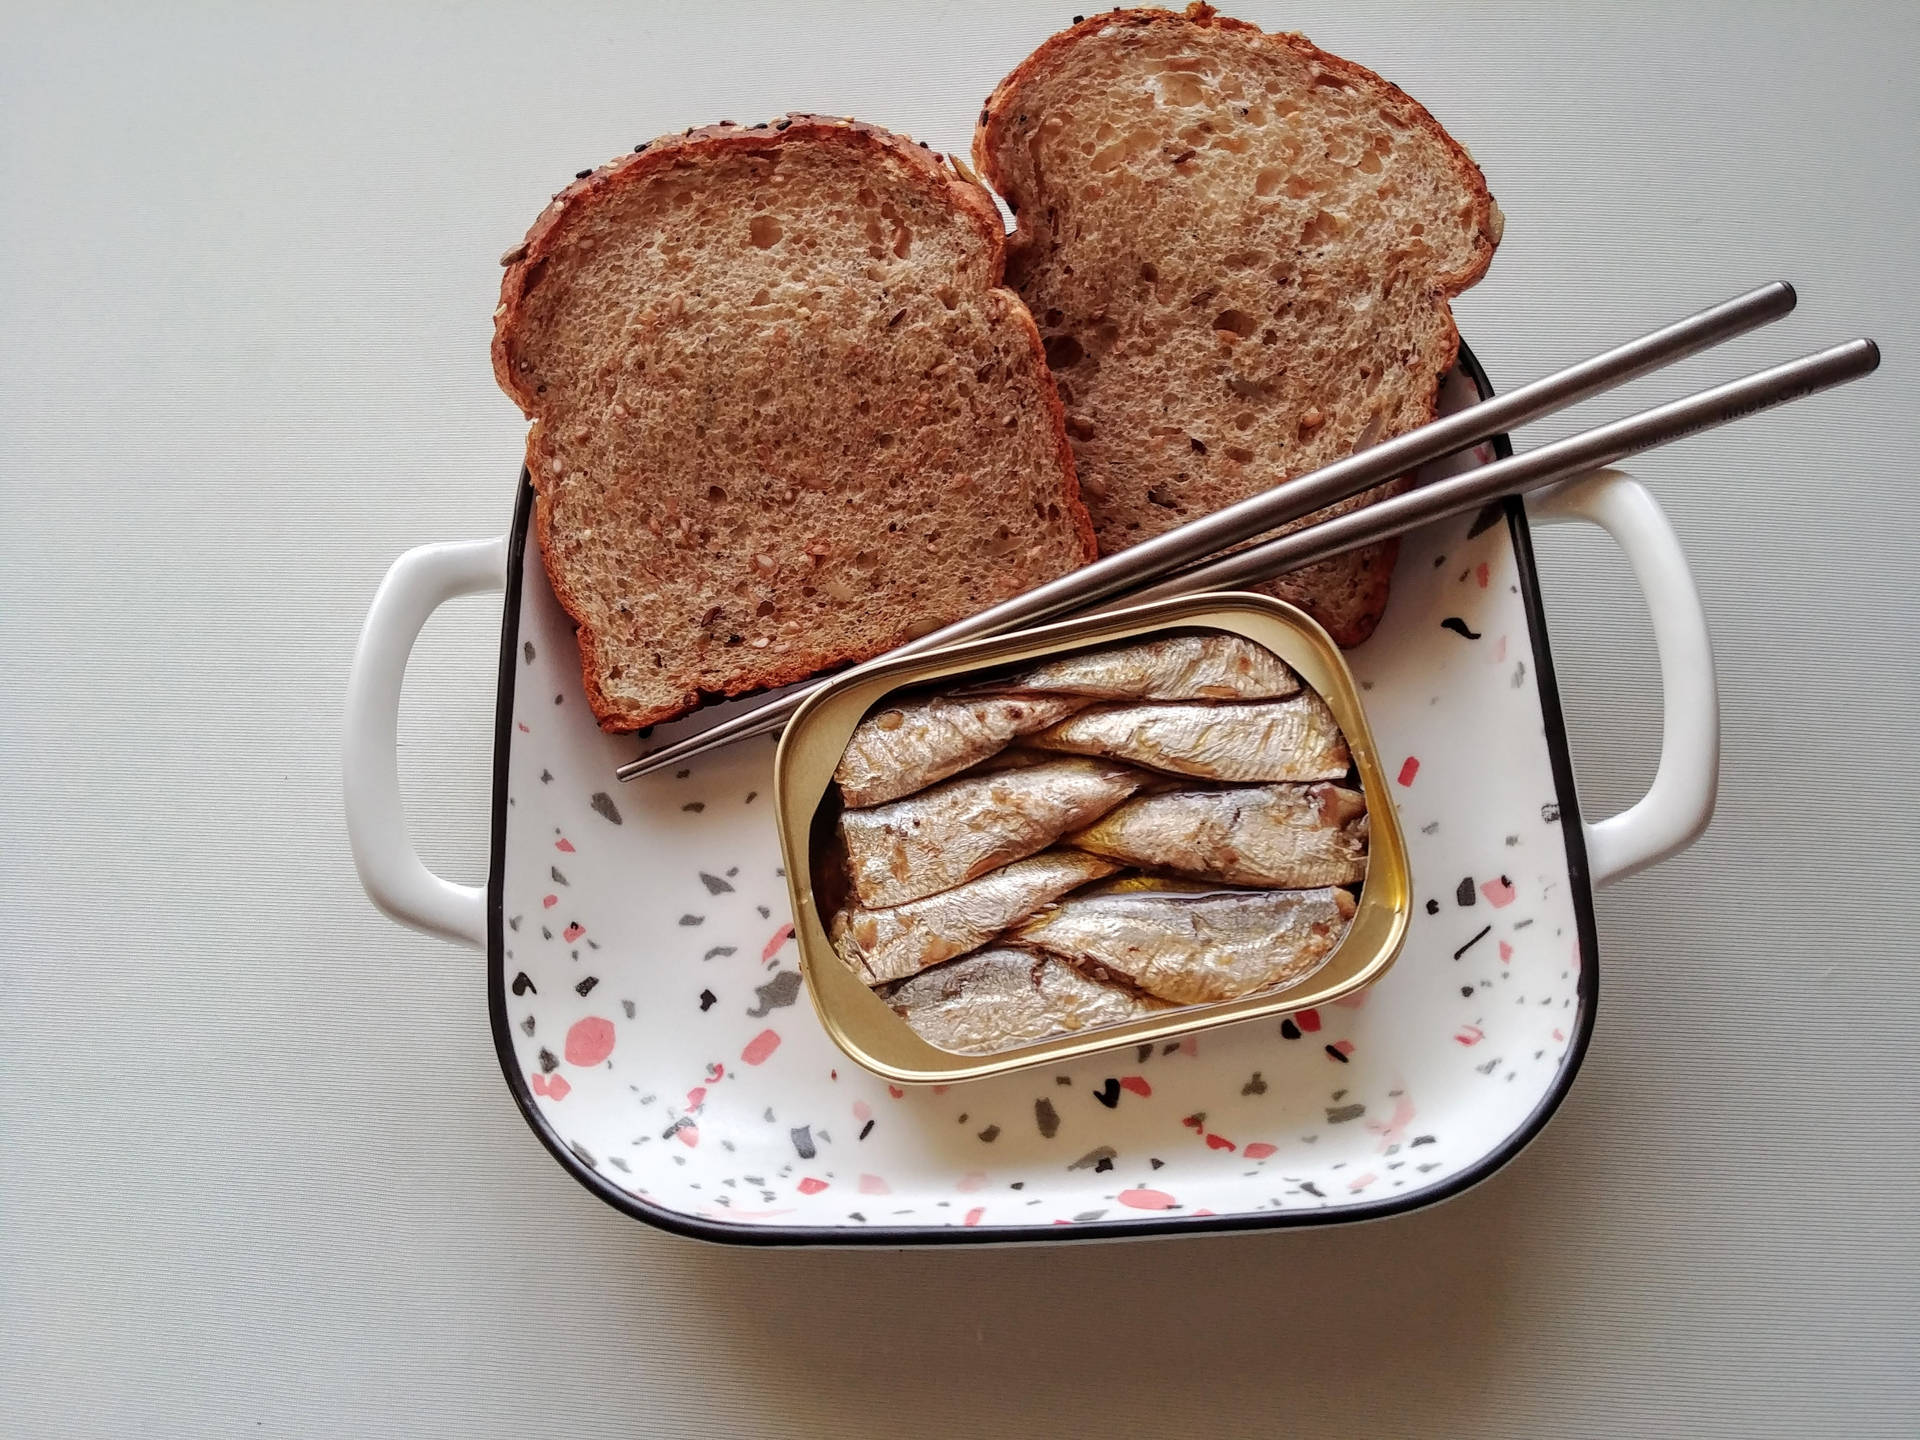 Sardiner matchet med to stykker brød. Wallpaper